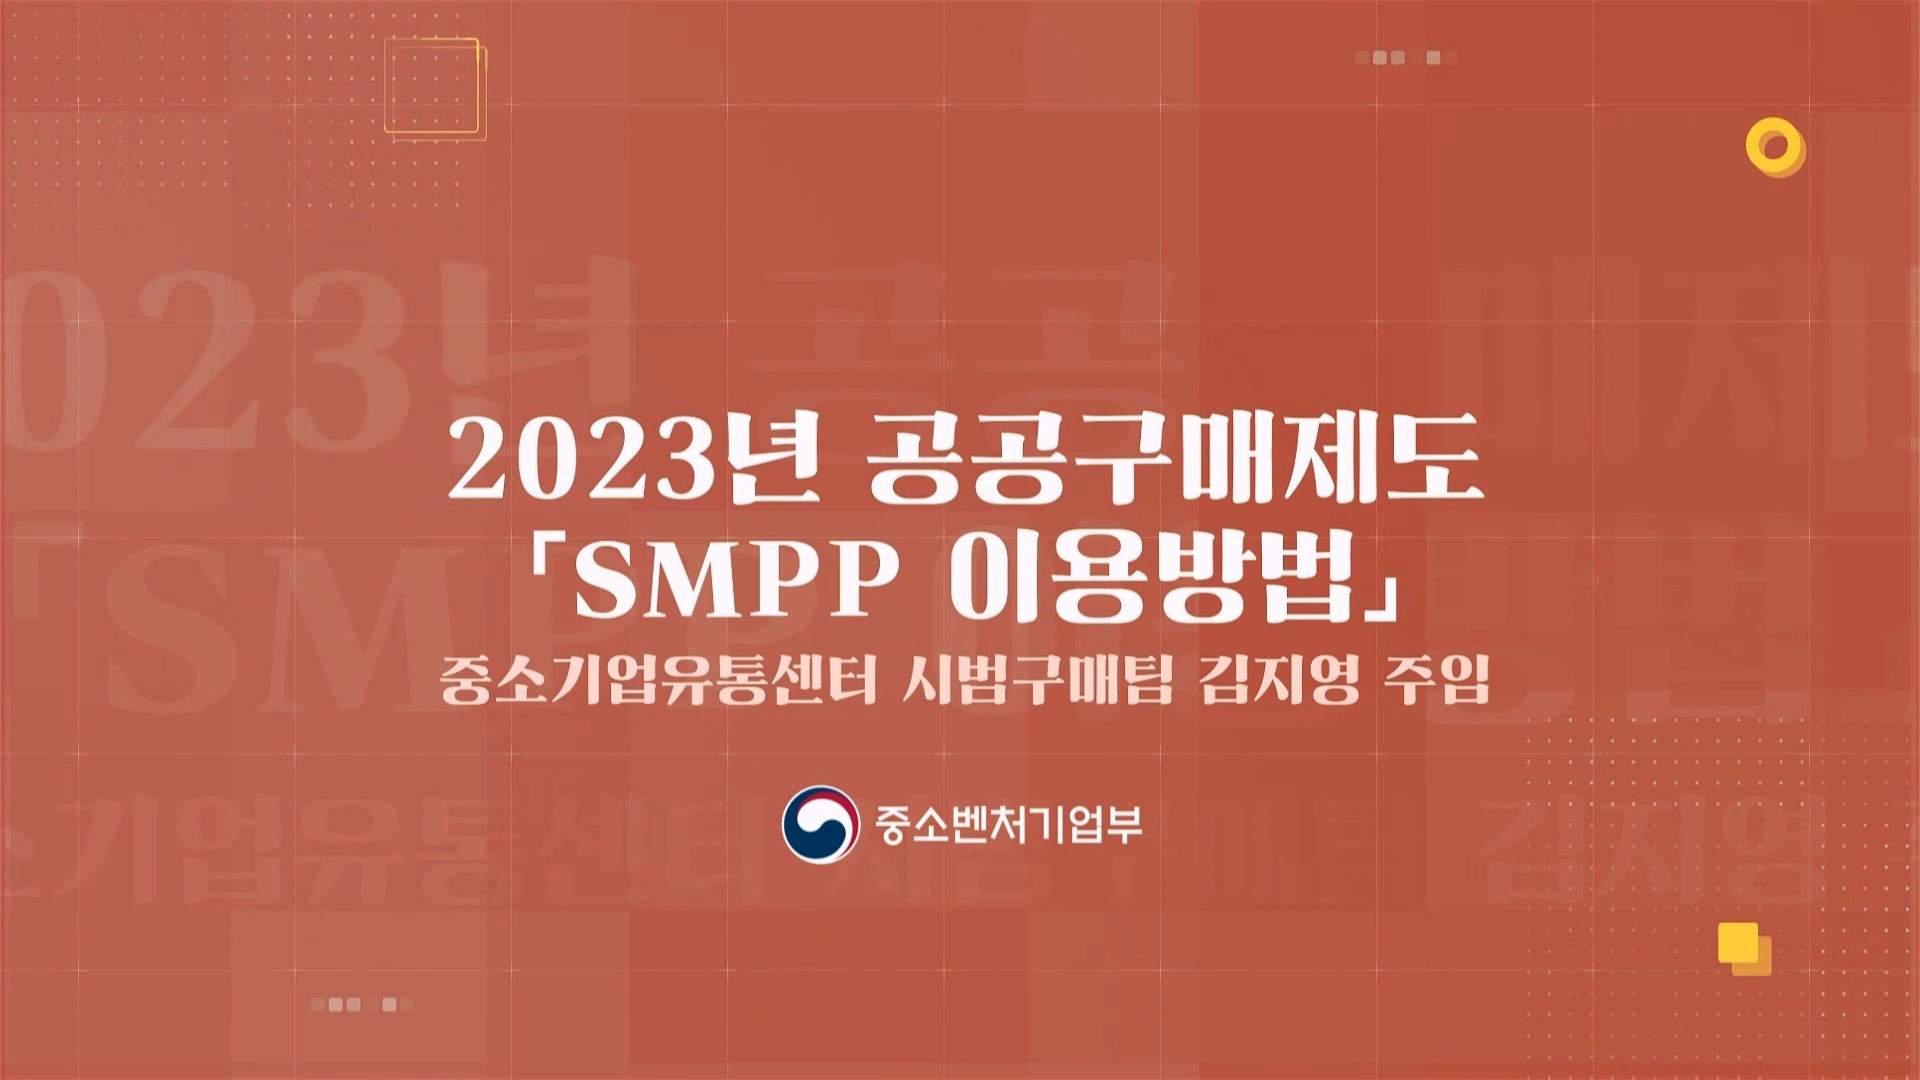 6. 2023년 공공구매제도 「SMPP 이용방법」